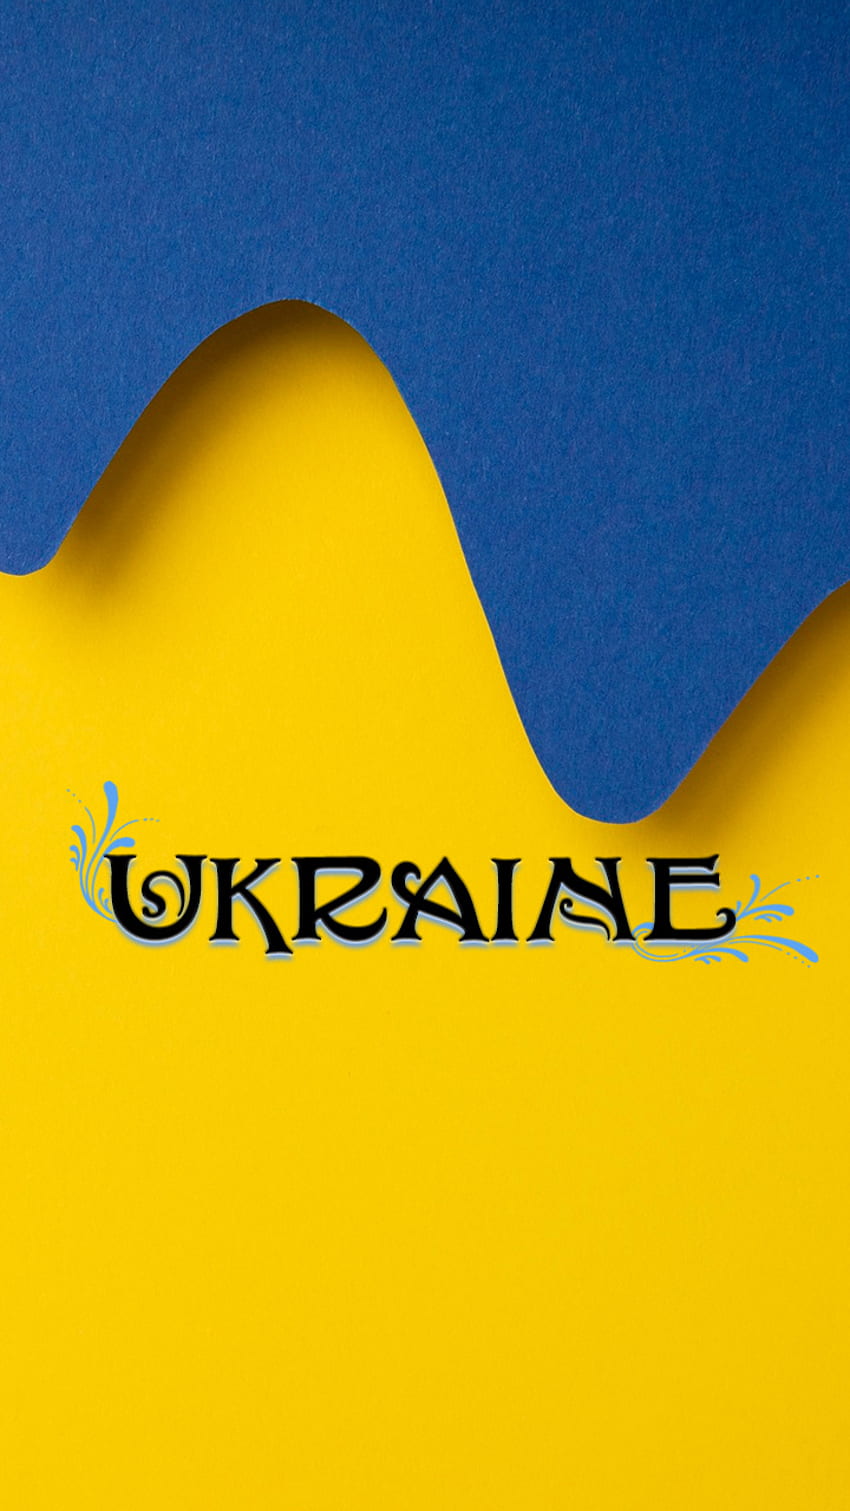 テキスト ウクライナ 2、フラグ、standwithukraine、青、平和、パターン、黄色、シンプル、かわいい HD電話の壁紙